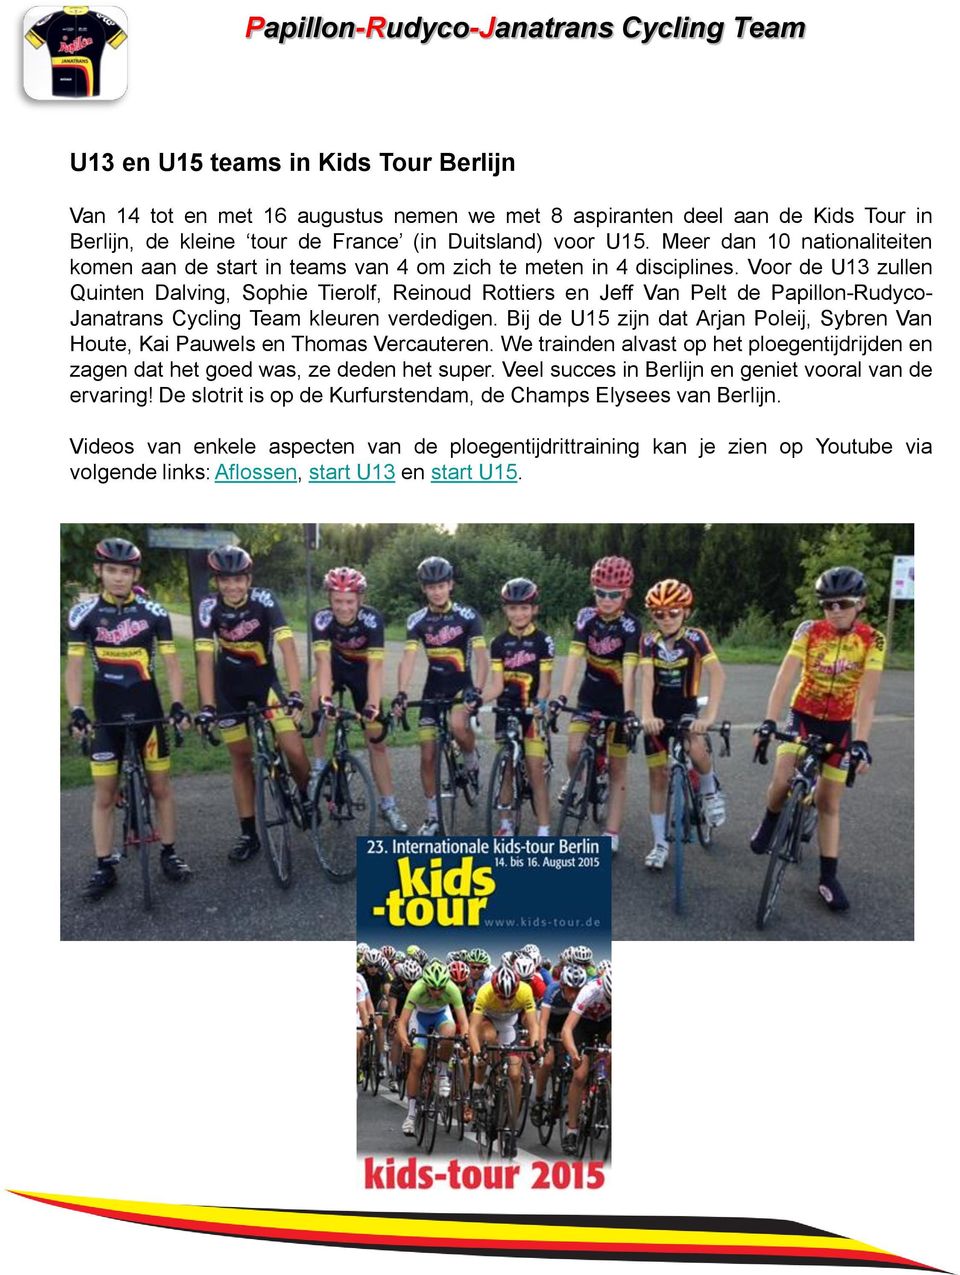 Voor de U13 zullen Quinten Dalving, Sophie Tierolf, Reinoud Rottiers en Jeff Van Pelt de Papillon-Rudyco- Janatrans Cycling Team kleuren verdedigen.